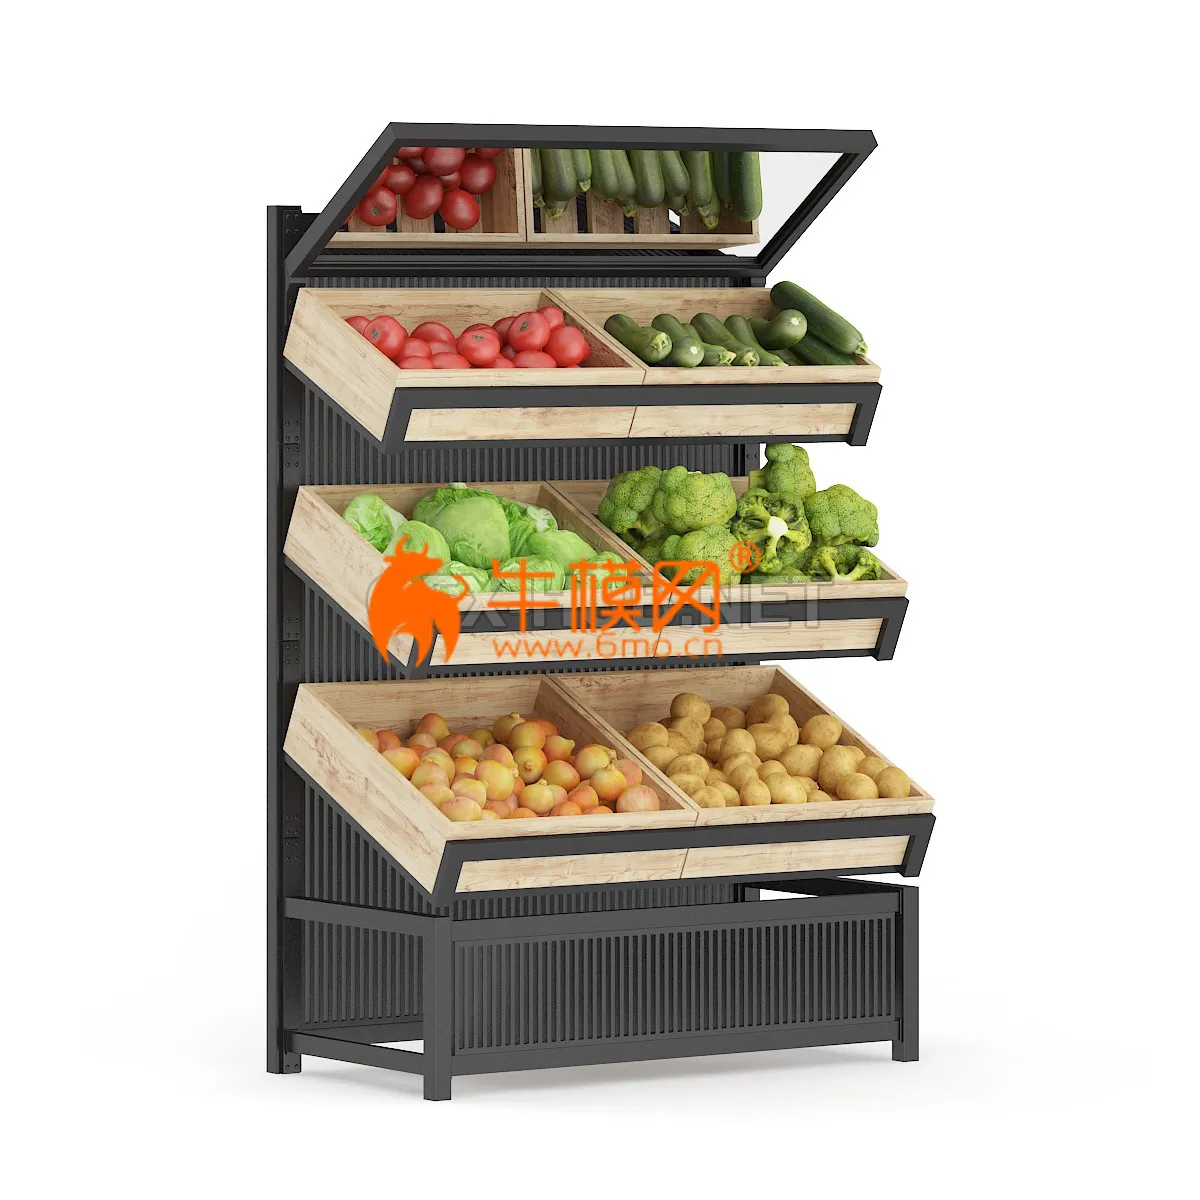 Market Shelf Vegetables – 6359